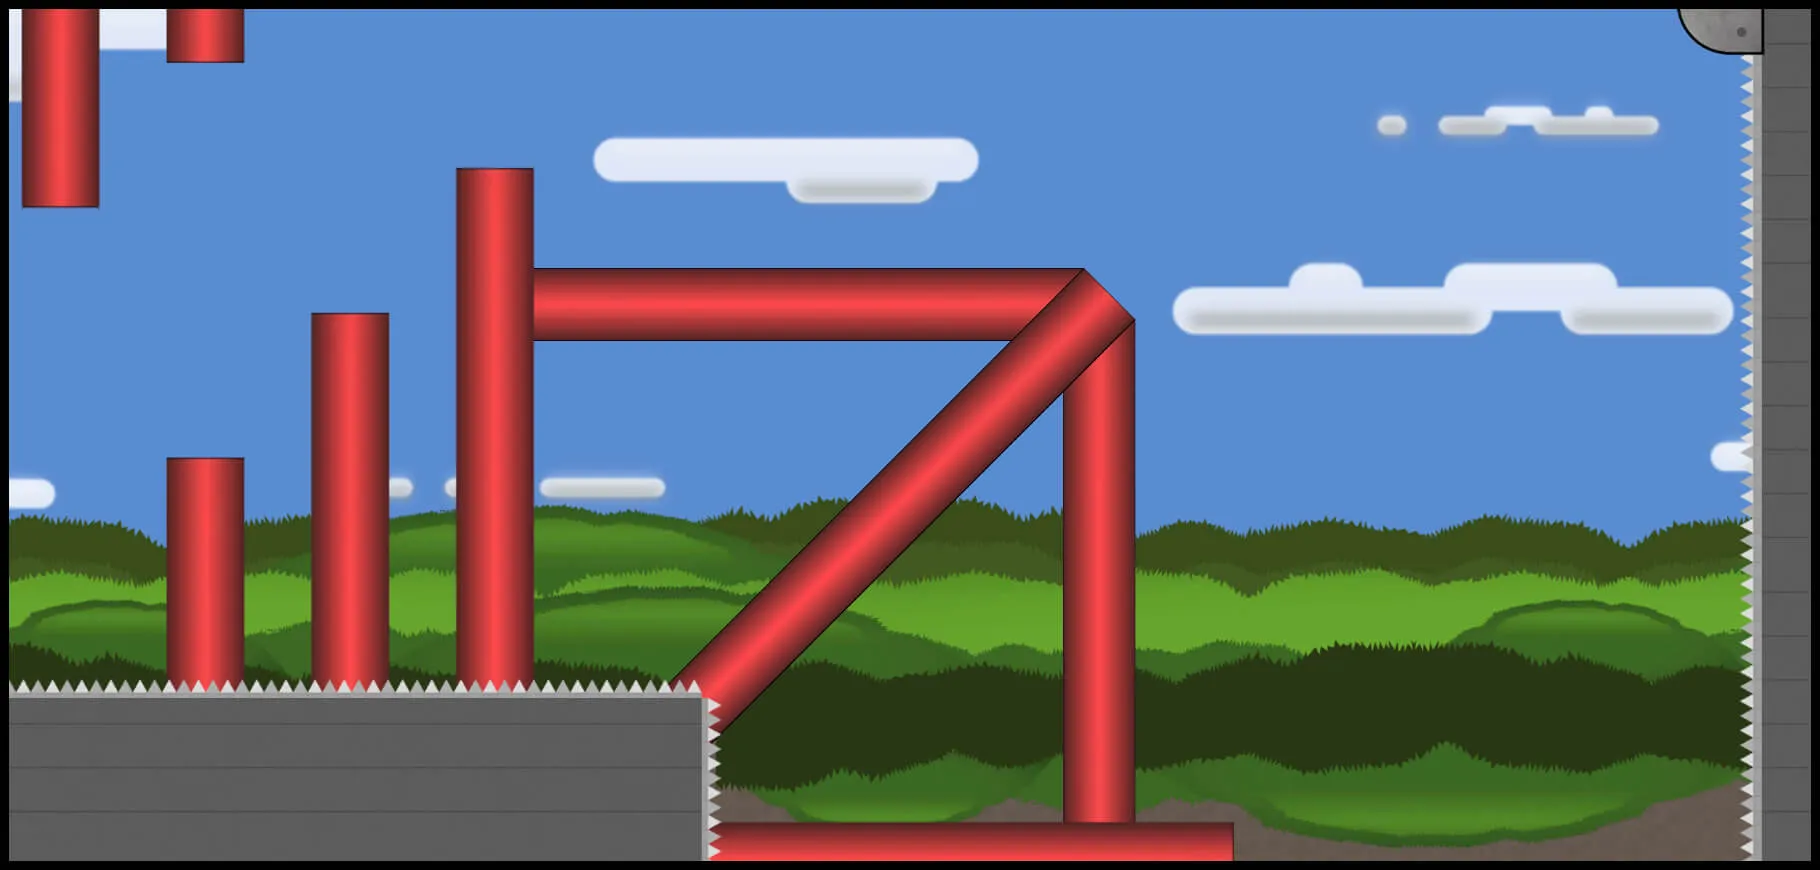 pillars of autumn level screenshot from the game reflex runner.